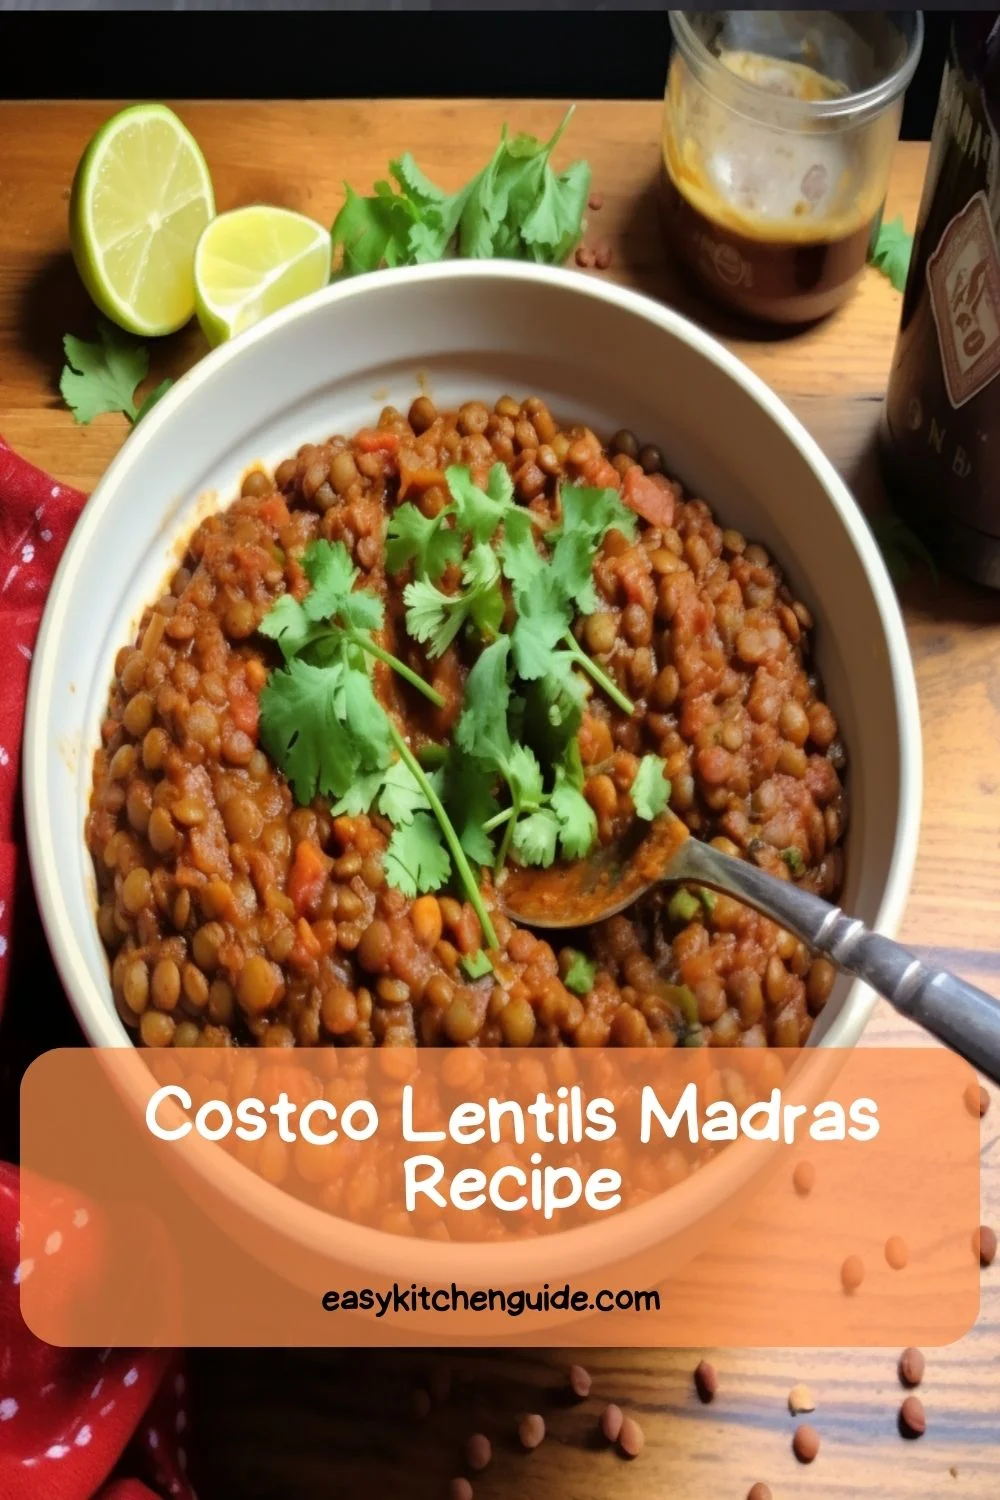 Costco Lentils Madras Recipe